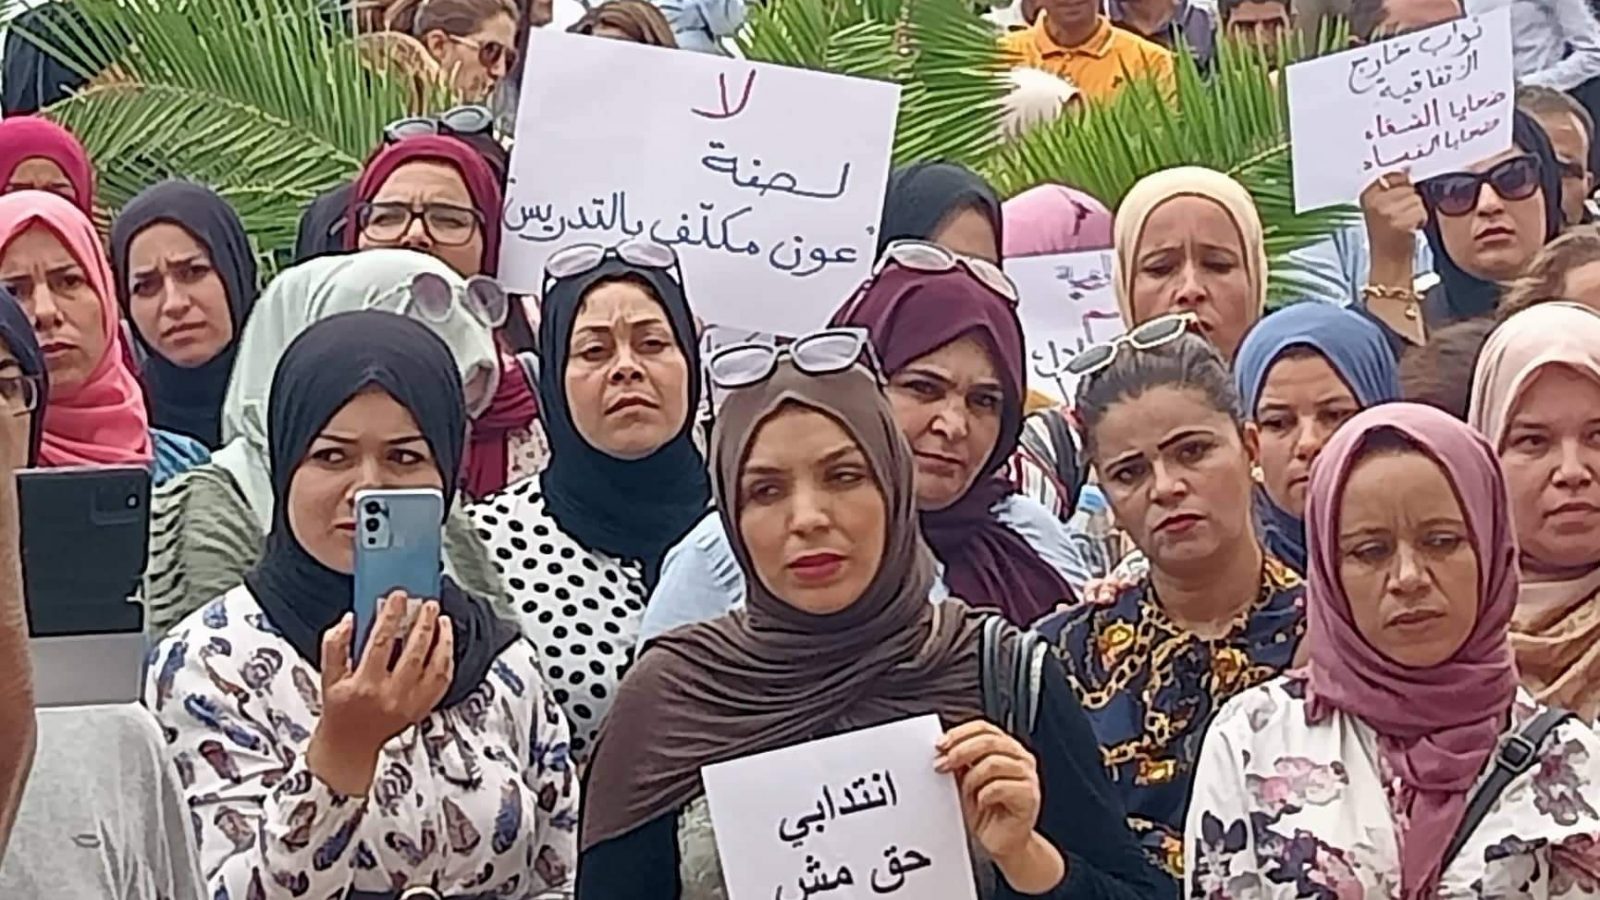 إرساليات إعفاء للمعلمين النواب/ نقابي يوضّح لـ”تونس الآن”